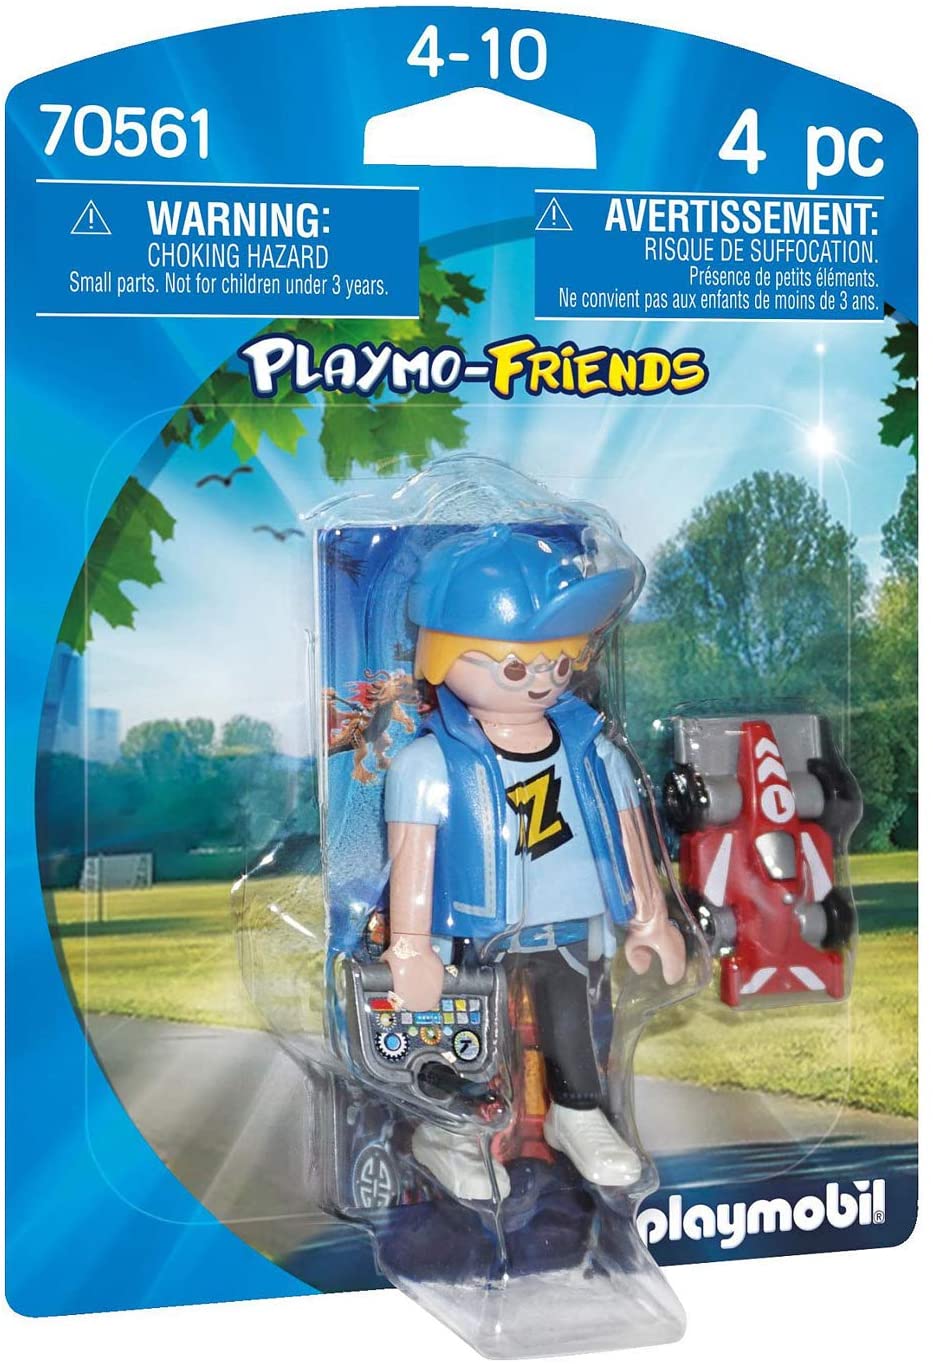 Playmobil 70561 Playmo Friends jongen met RC auto voor kinderen vanaf 4 jaar